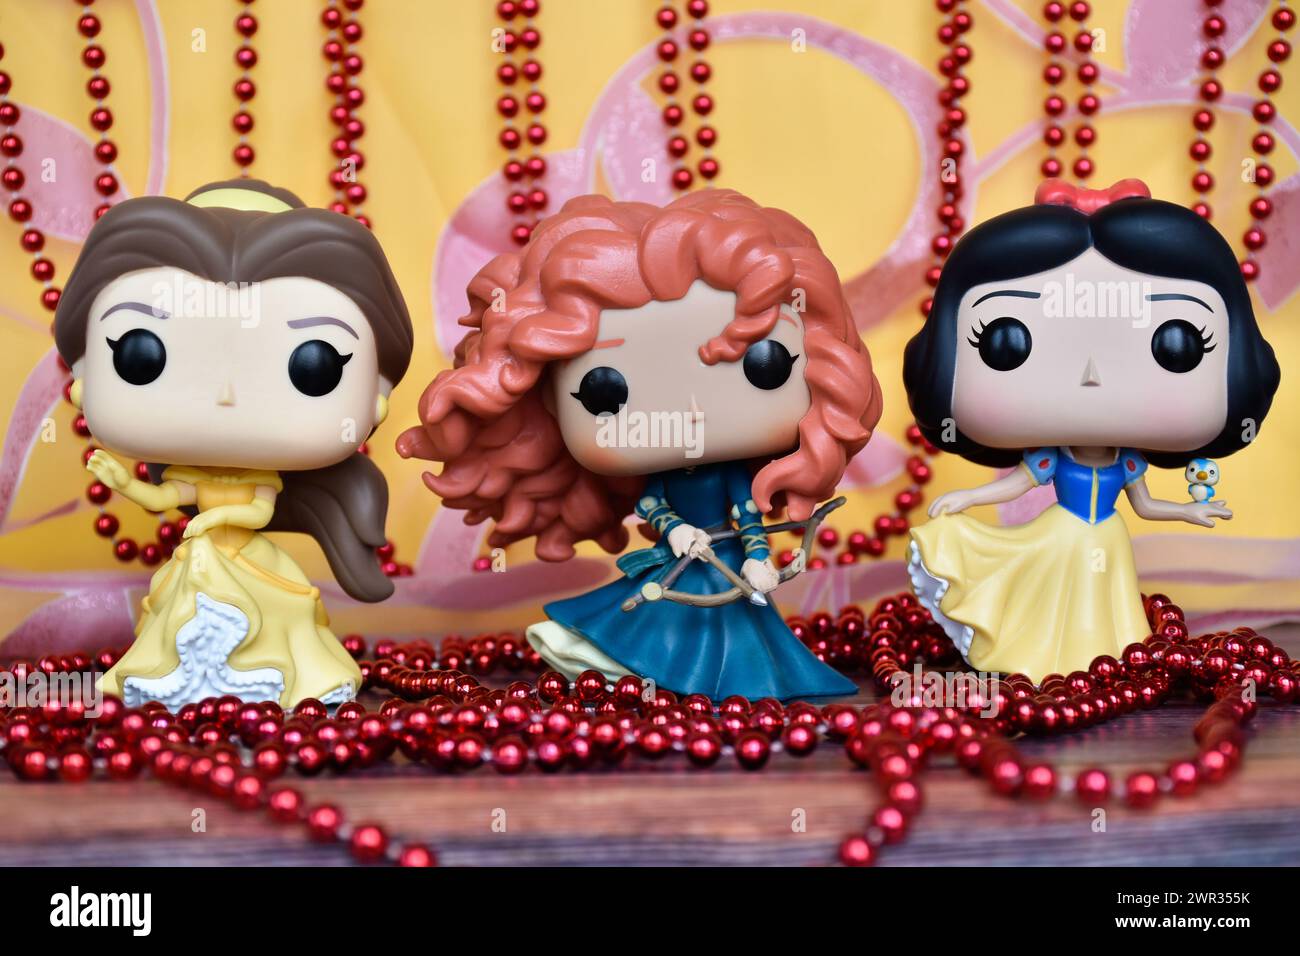 Funko Pop Actionfiguren der Disney-Prinzessinnen Belle (die Schönheit und das Biest), Merida (tapfer) und Schneewittchen. Goldener rosa Vorhang, rote Halskette, fabelhaft. Stockfoto